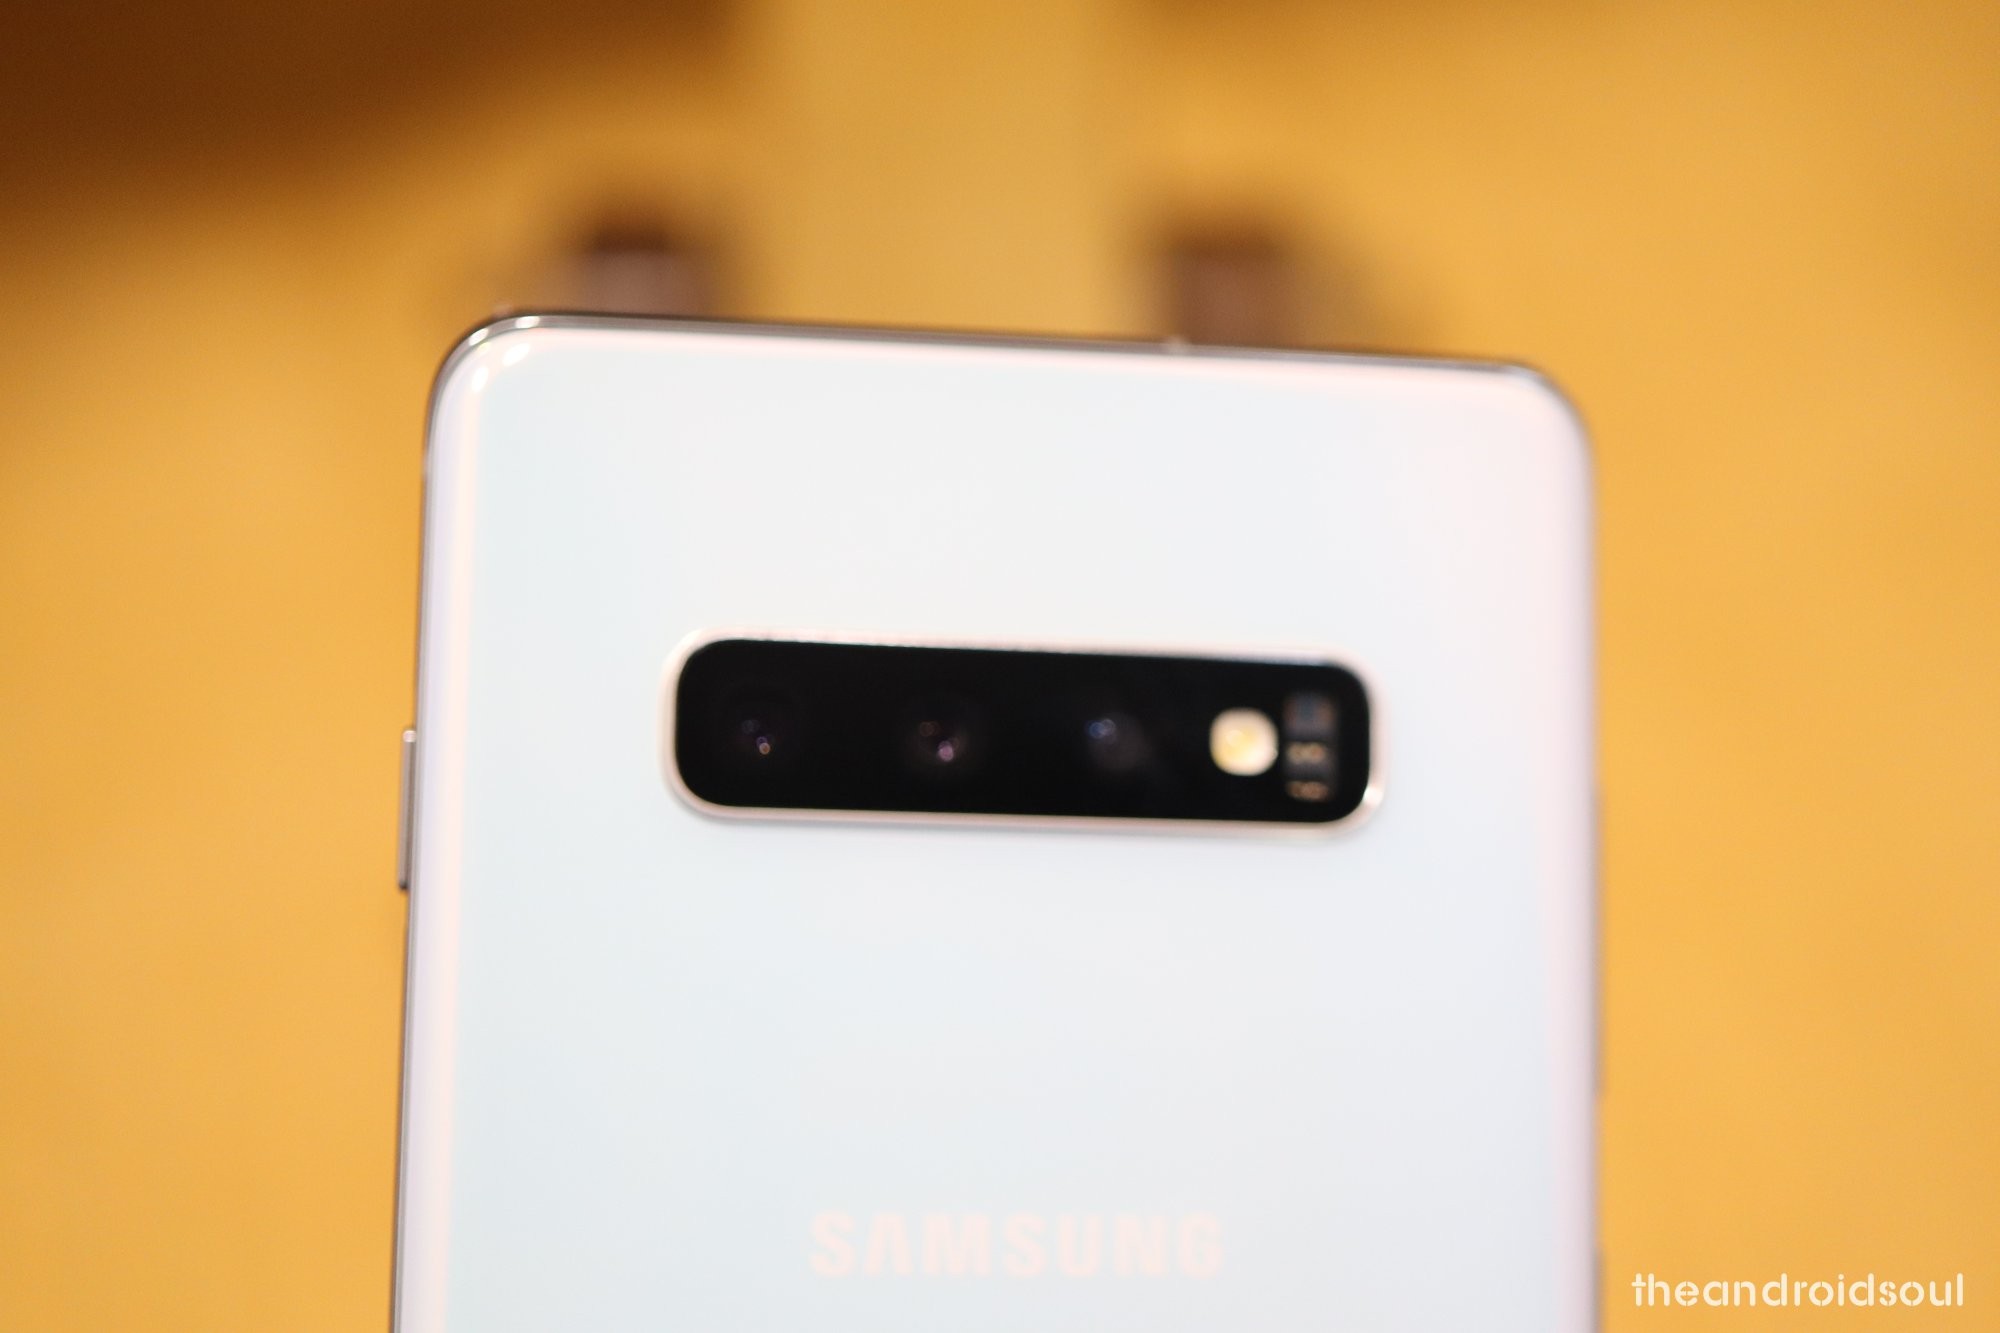 Samsung Galaxy S10 update